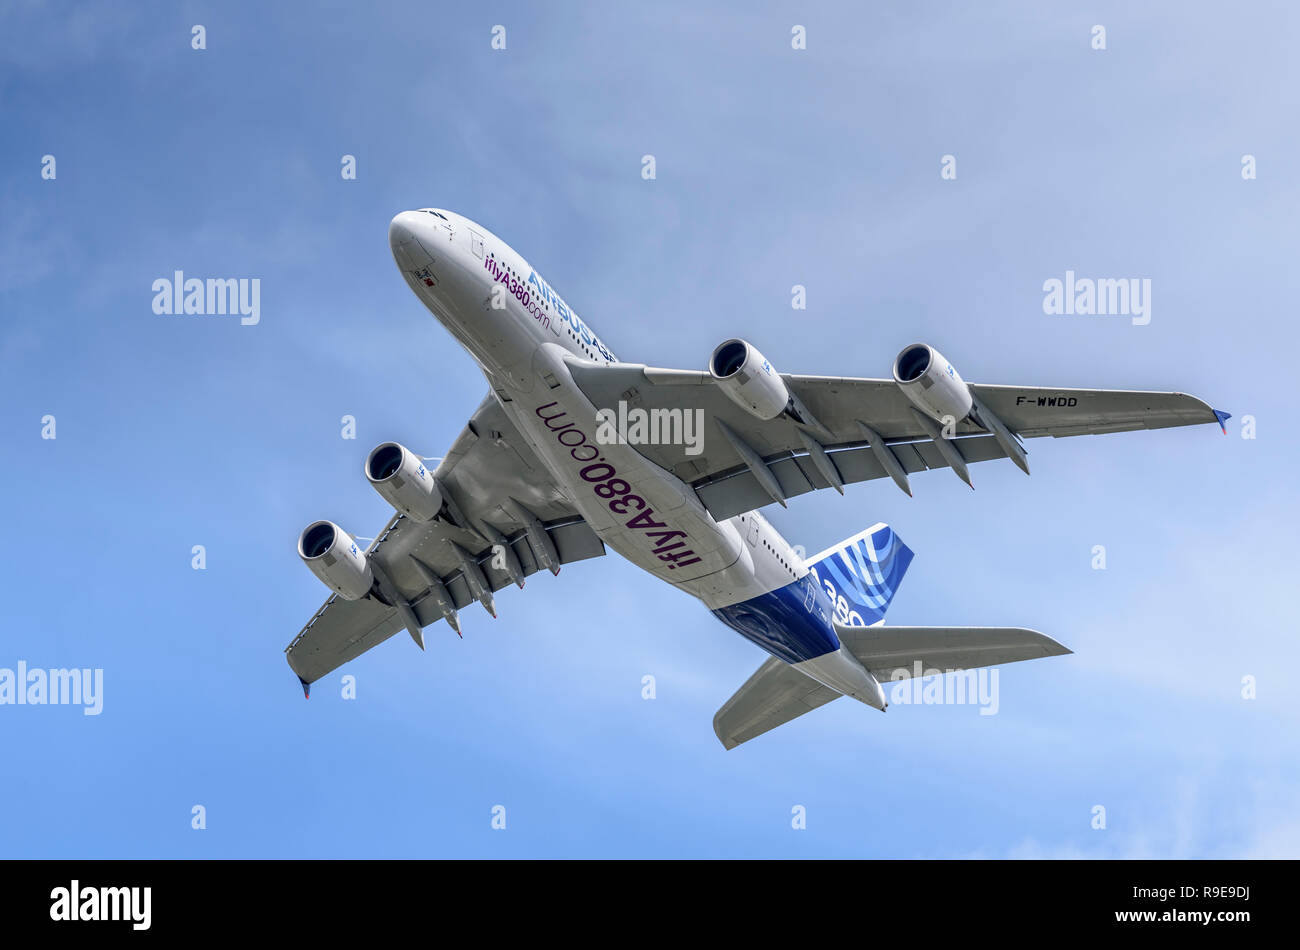 Avión de pasajeros Airbus A380 muestra su cara inferior y superficies de control de vuelo durante un limpio pase de derecha a izquierda. Foto de stock